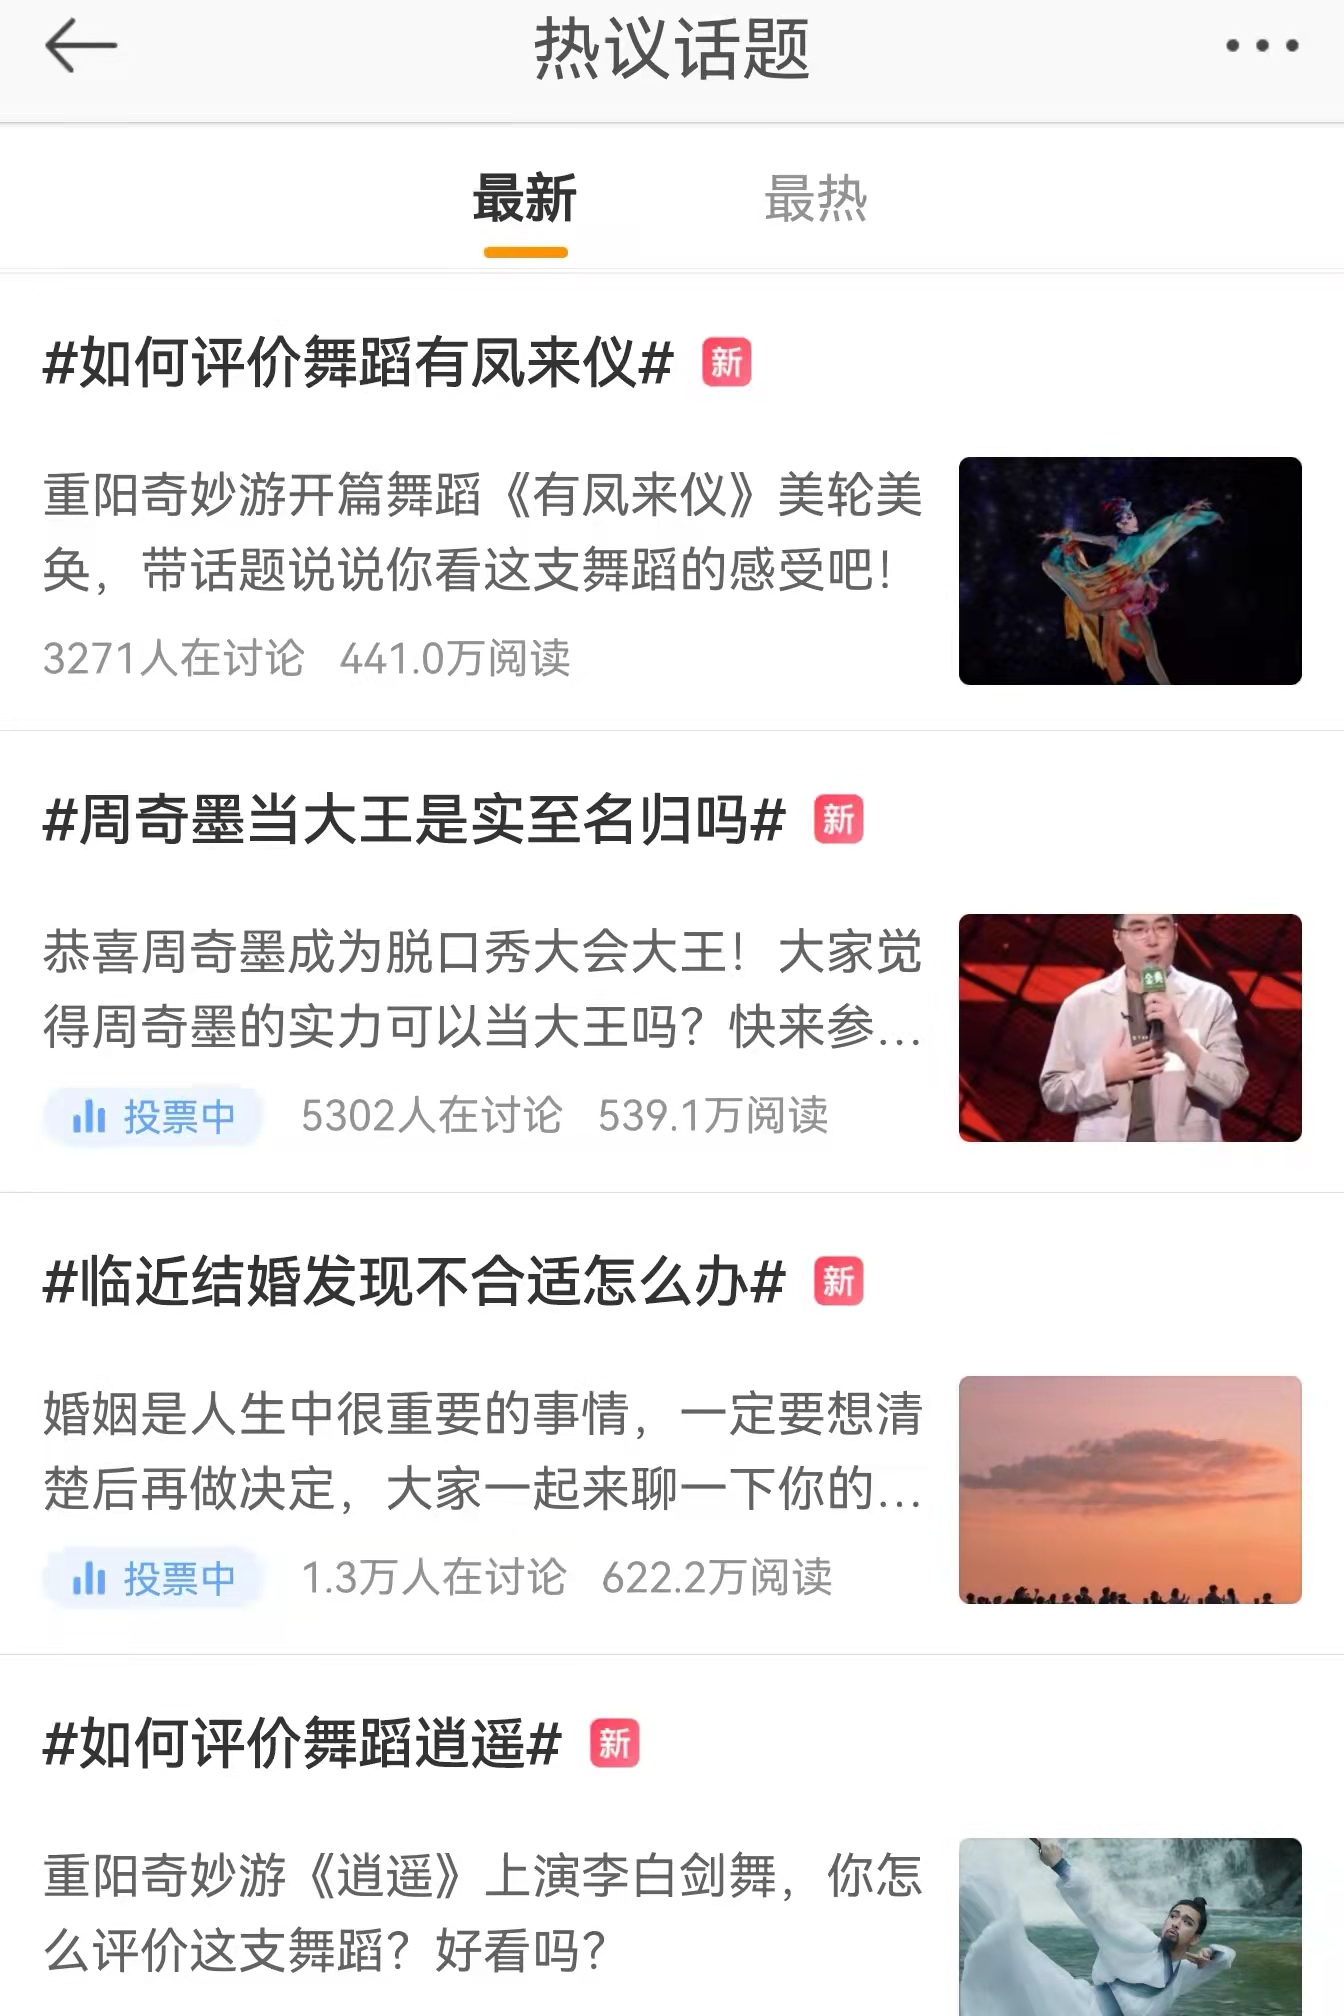 《重阳奇妙游》热播： 超9成网友认定河南卫视是“文化霸总”